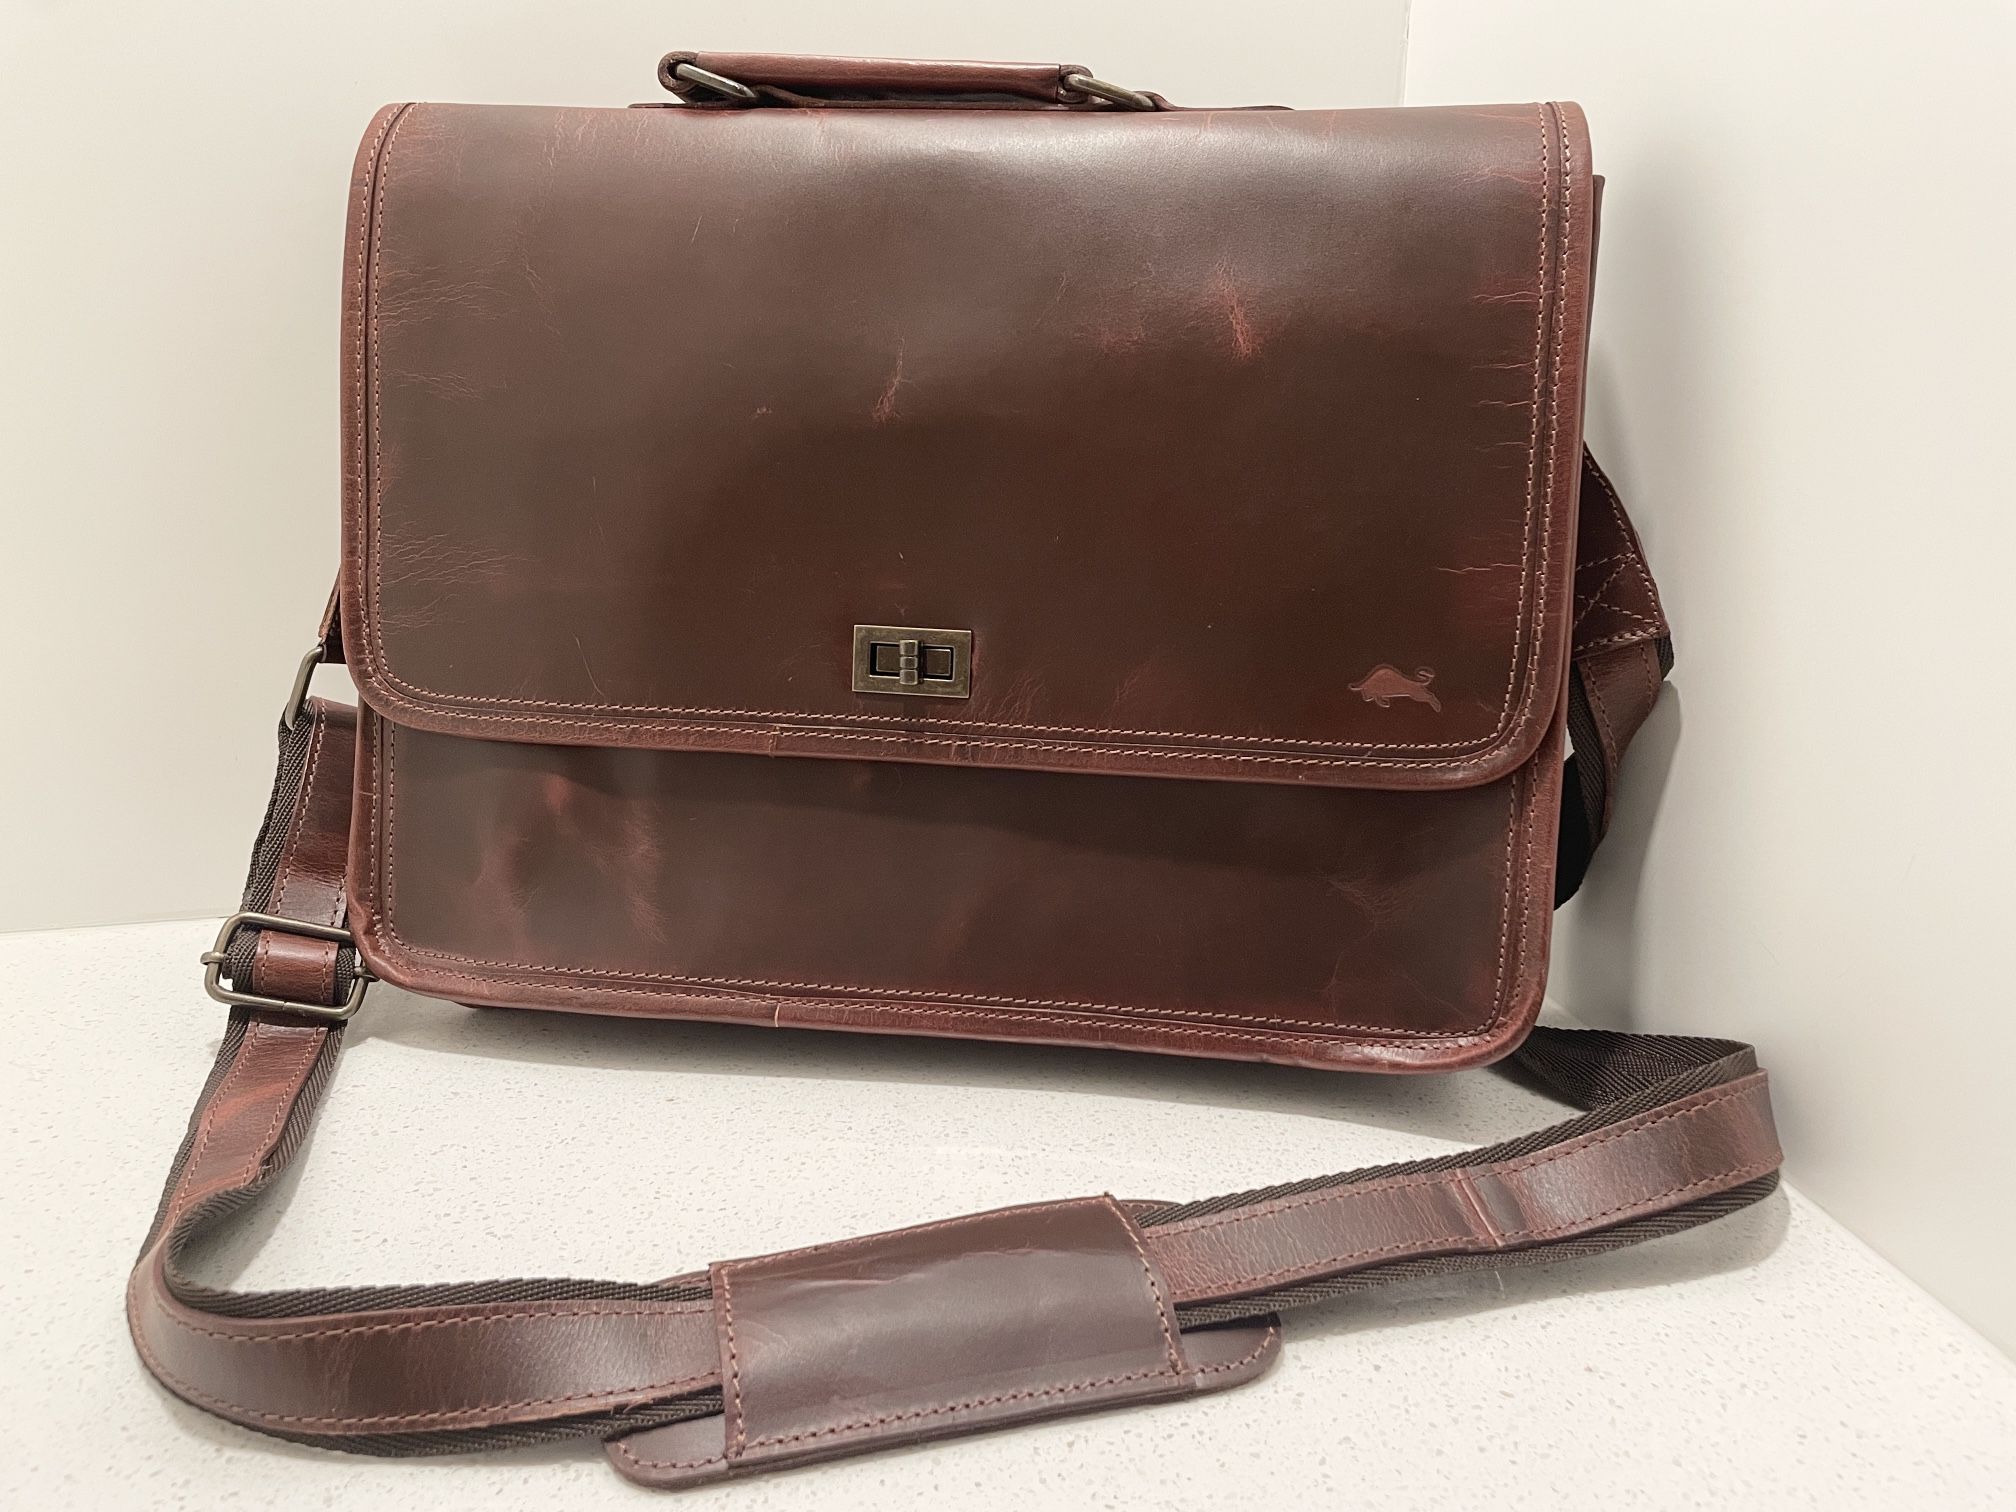 Levinson Parker Leather Messenger Bag For Men - Red/Brown - 16x4x11